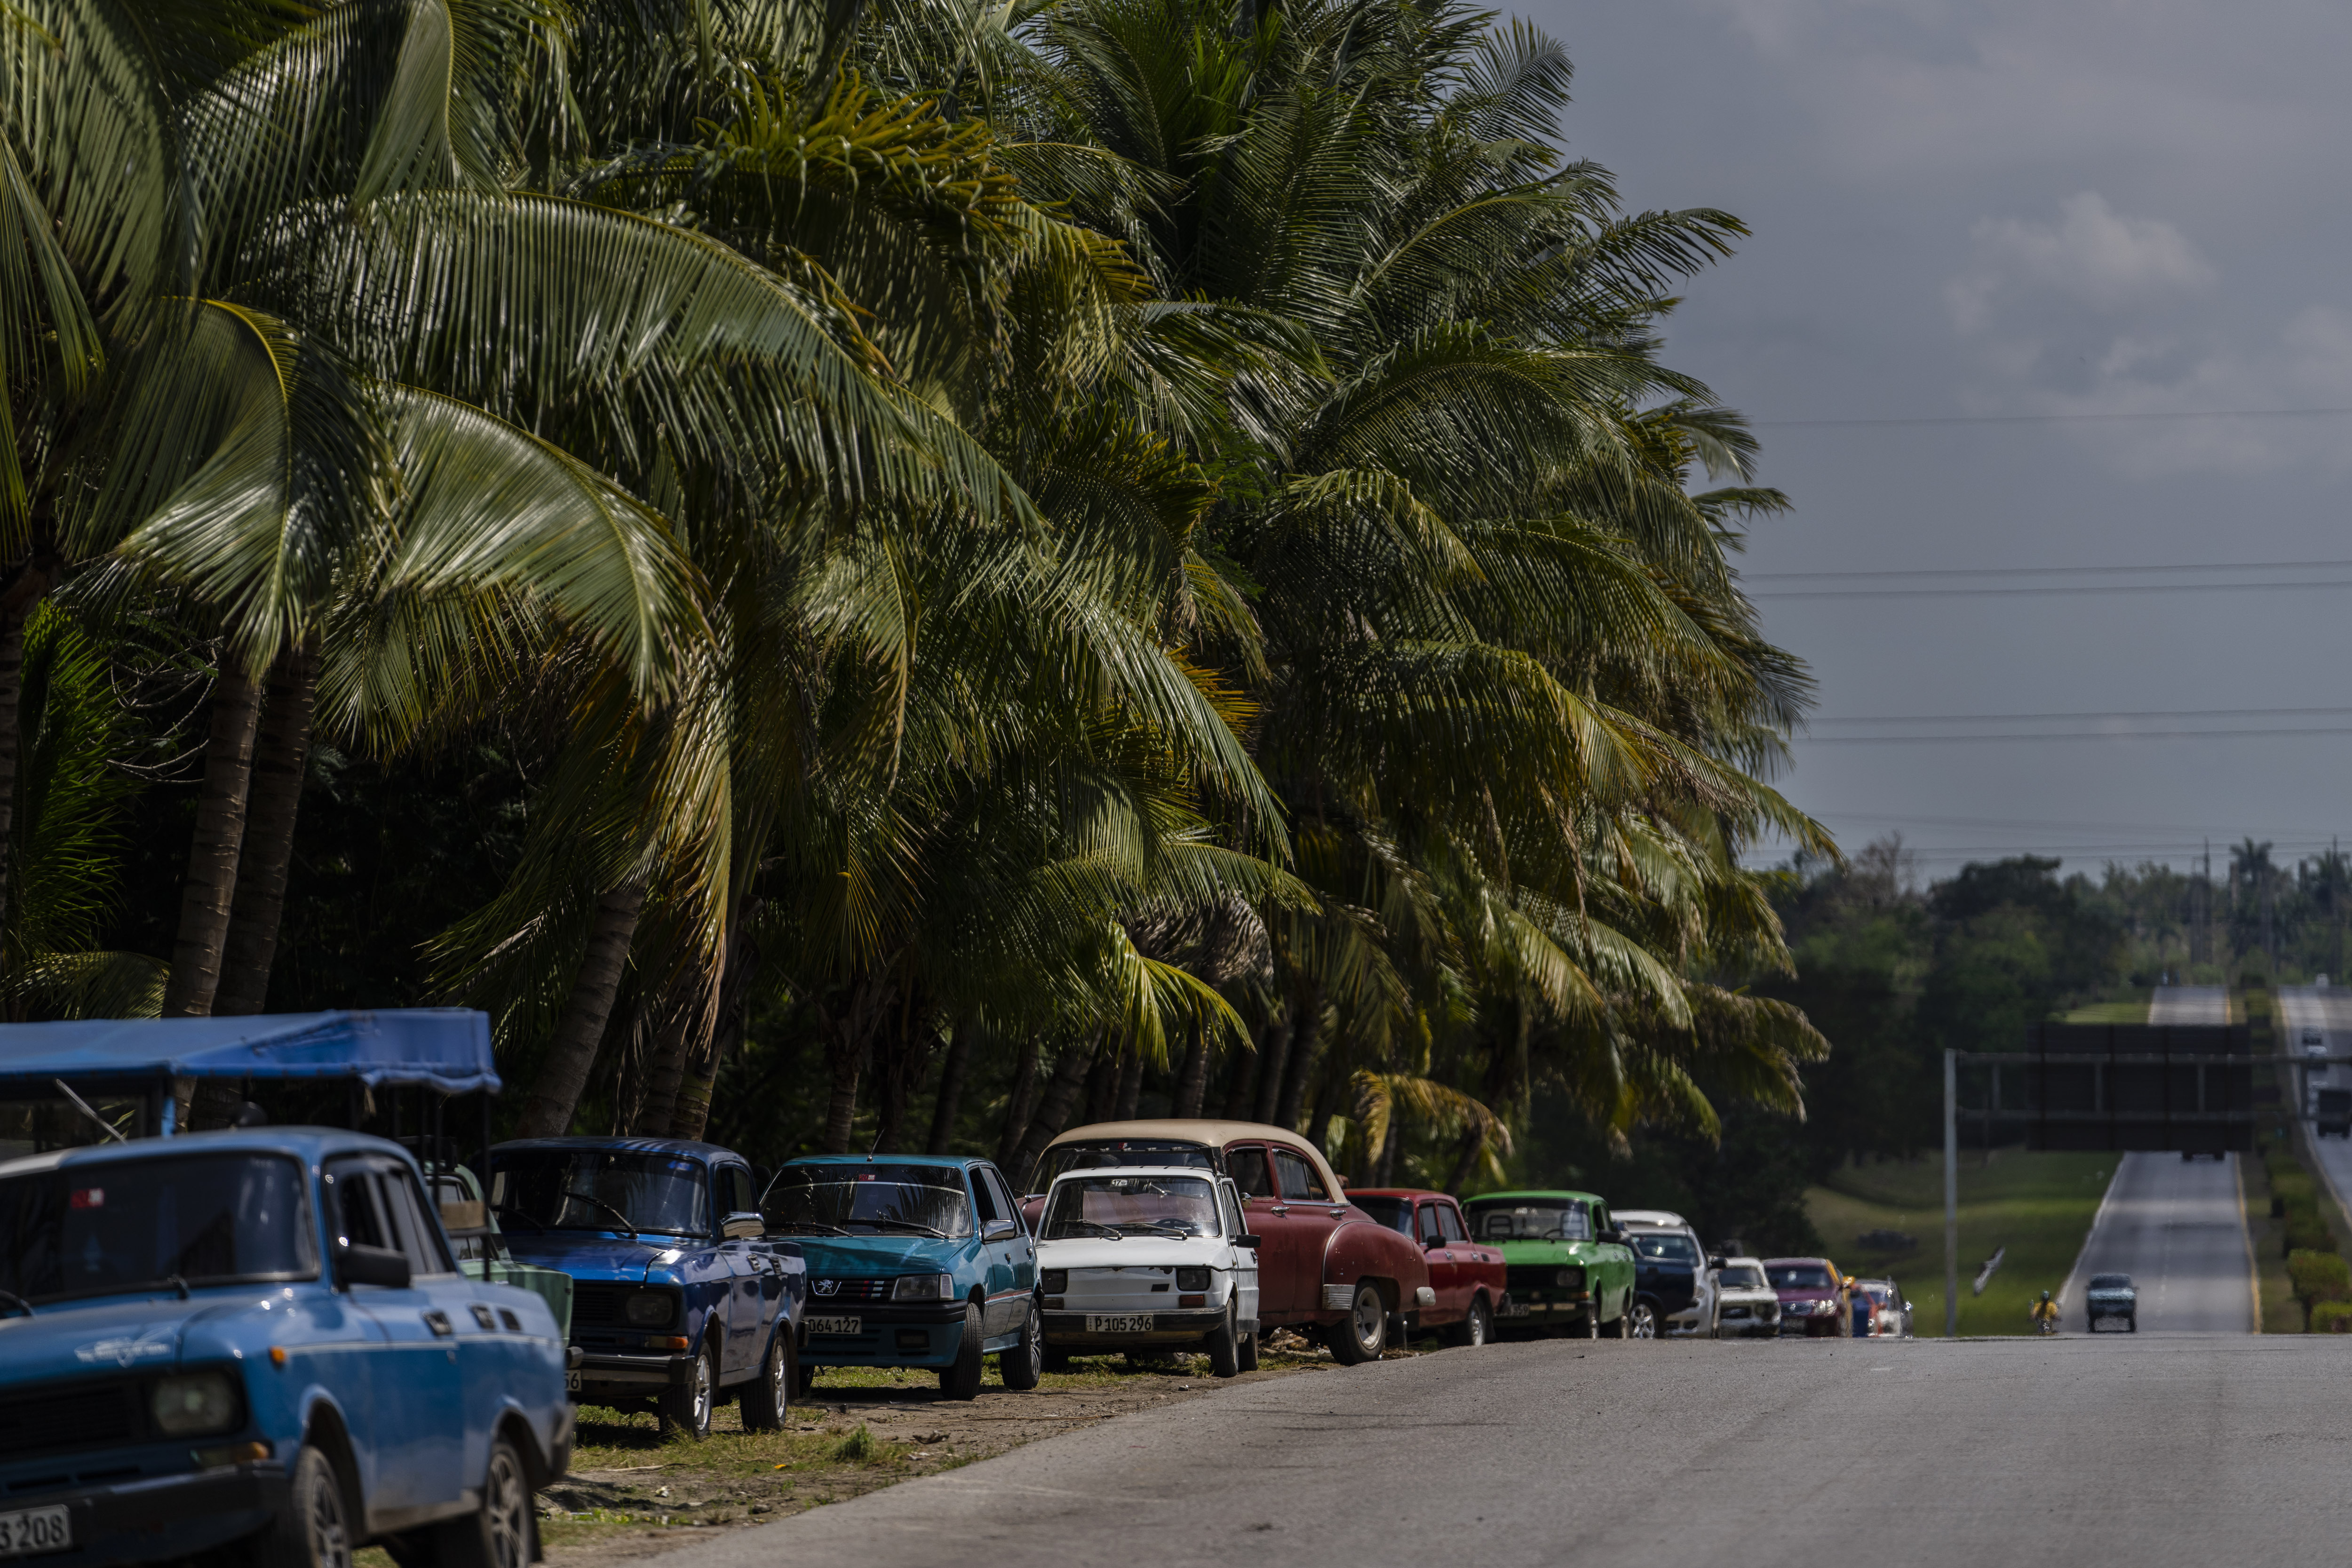 La gente hace fila para poder reabastecer sus autos en La Habana, Cuba, el lunes 24 de abril de 2023. La capital de Cuba ha estado restringiendo las ventas de combustible, amenazando con debilitar aún más una economía tambaleándose por apagones de energía e inflación galopante. (Foto AP/Ramón Espinosa)